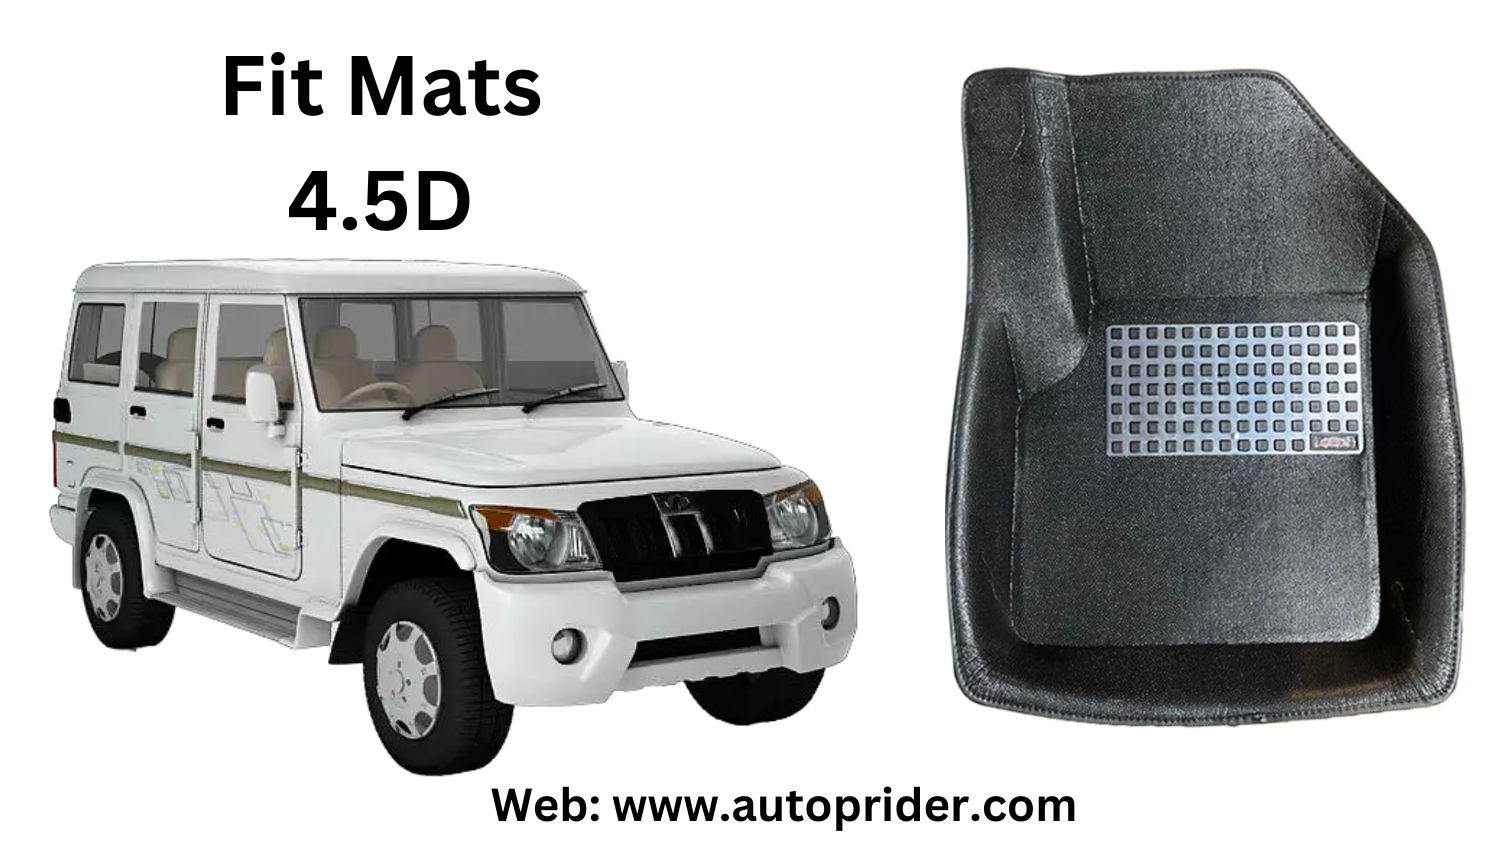 Autoprider | Fit Mats 4.5D Economy Car Mats for Mahindra Bolero